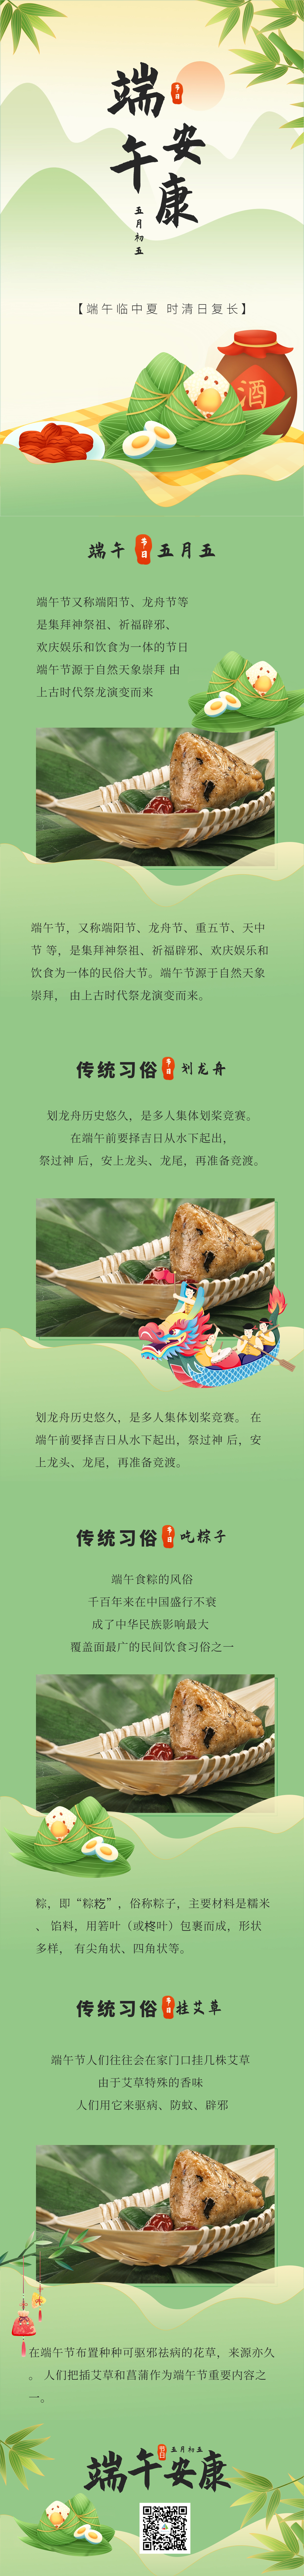 手绘中国传统节日端午节习俗活动长图海报.jpg